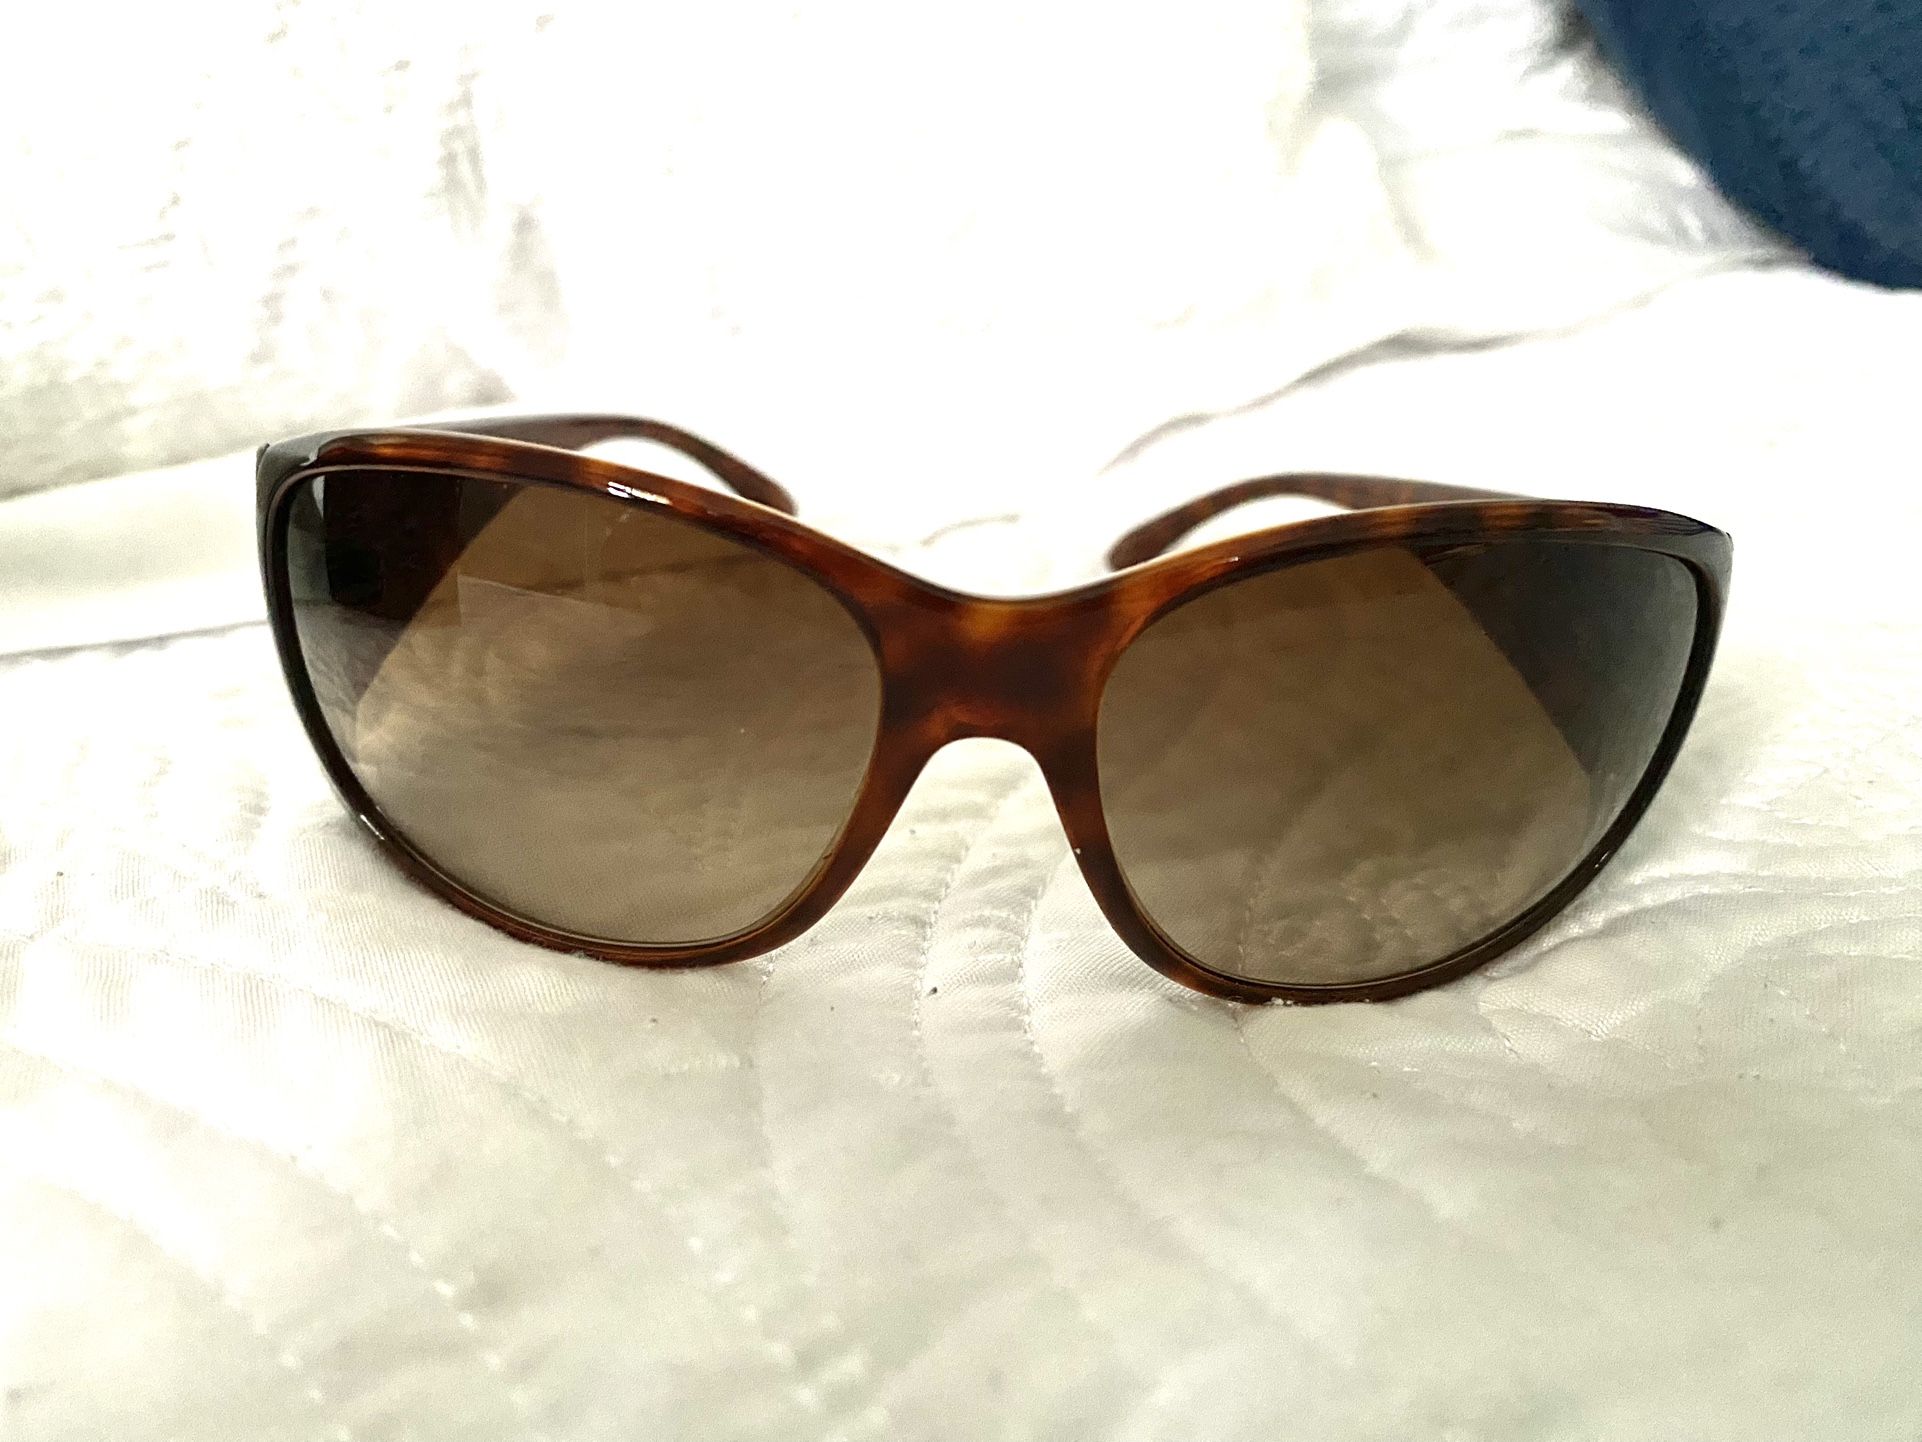 Designer PRADA authentic new In box sunglasses